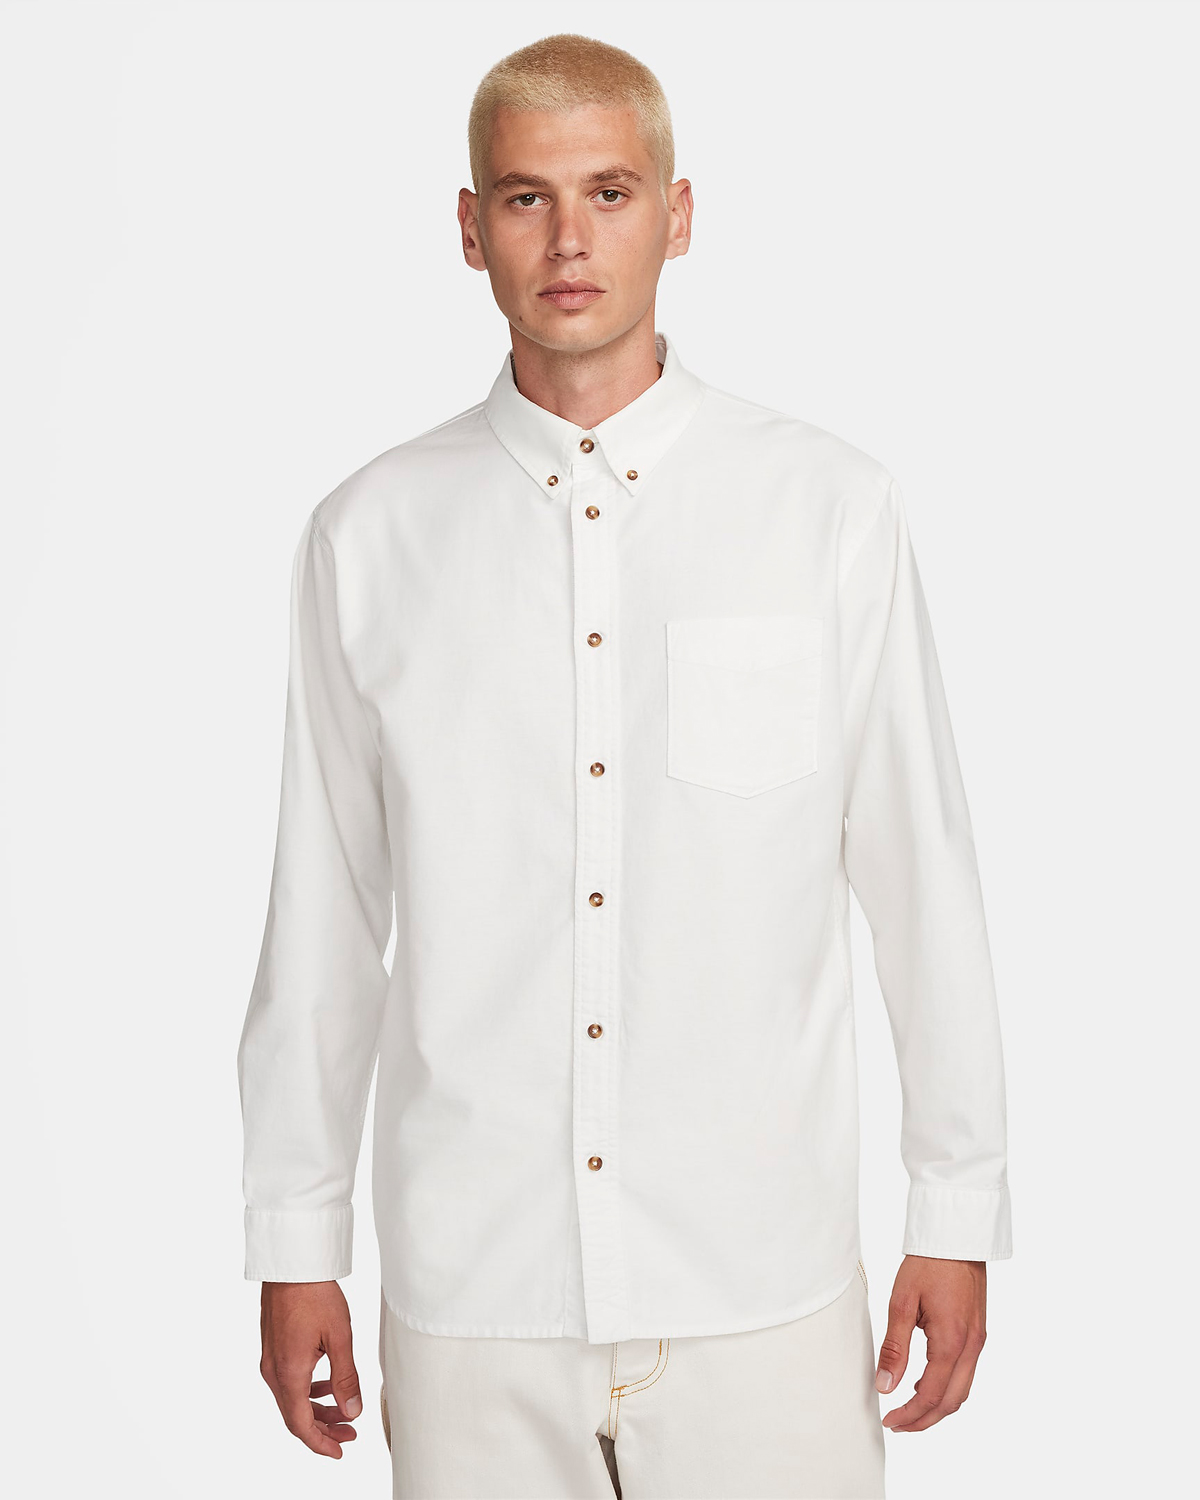 Nike-Life-Oxford-Button-Down-Shirt-Summit-White